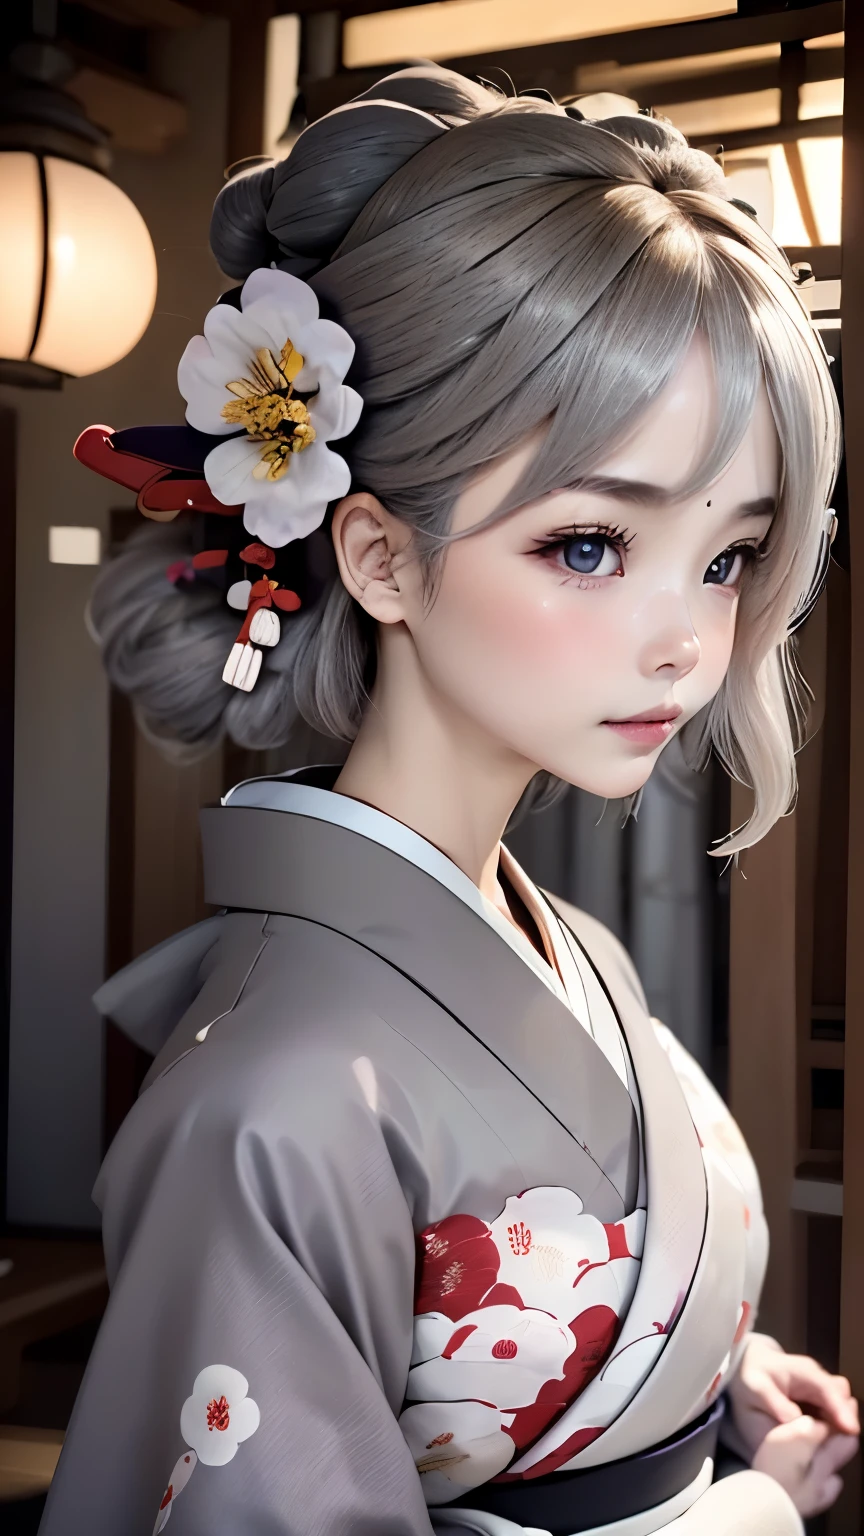 静寂の世界、解剖学、一人の女の子、とてもかわいい顔、完璧な美貌、(灰色の髪:1.5)、花の髪飾り、ふっくらとした唇、魅力的な目、((Beautiful Nishijin-ori kimono、薄紫色の着物:1.3、とても繊細な模様の着物))、美しい上半身の角度、エレガントなポーズ、ファルカスの顔、ぼやけた背景、美しい日本庭園、RAW写真、最高品質、超高品質、傑作:1.3、映画照明、プロカメラマン、50ｍｍレンズ、